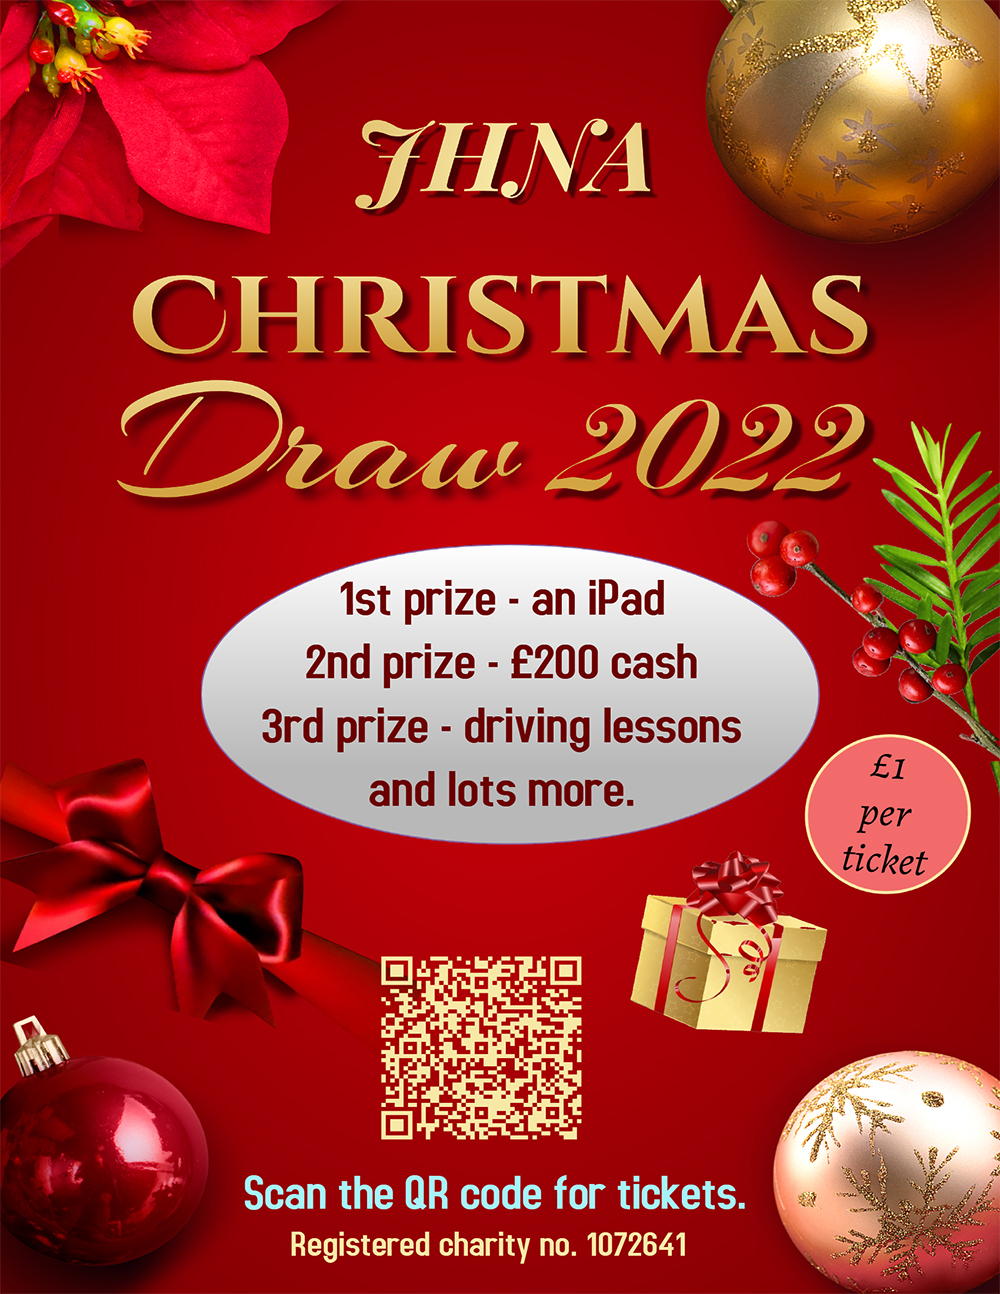 JHNA Christmas Draw 2022